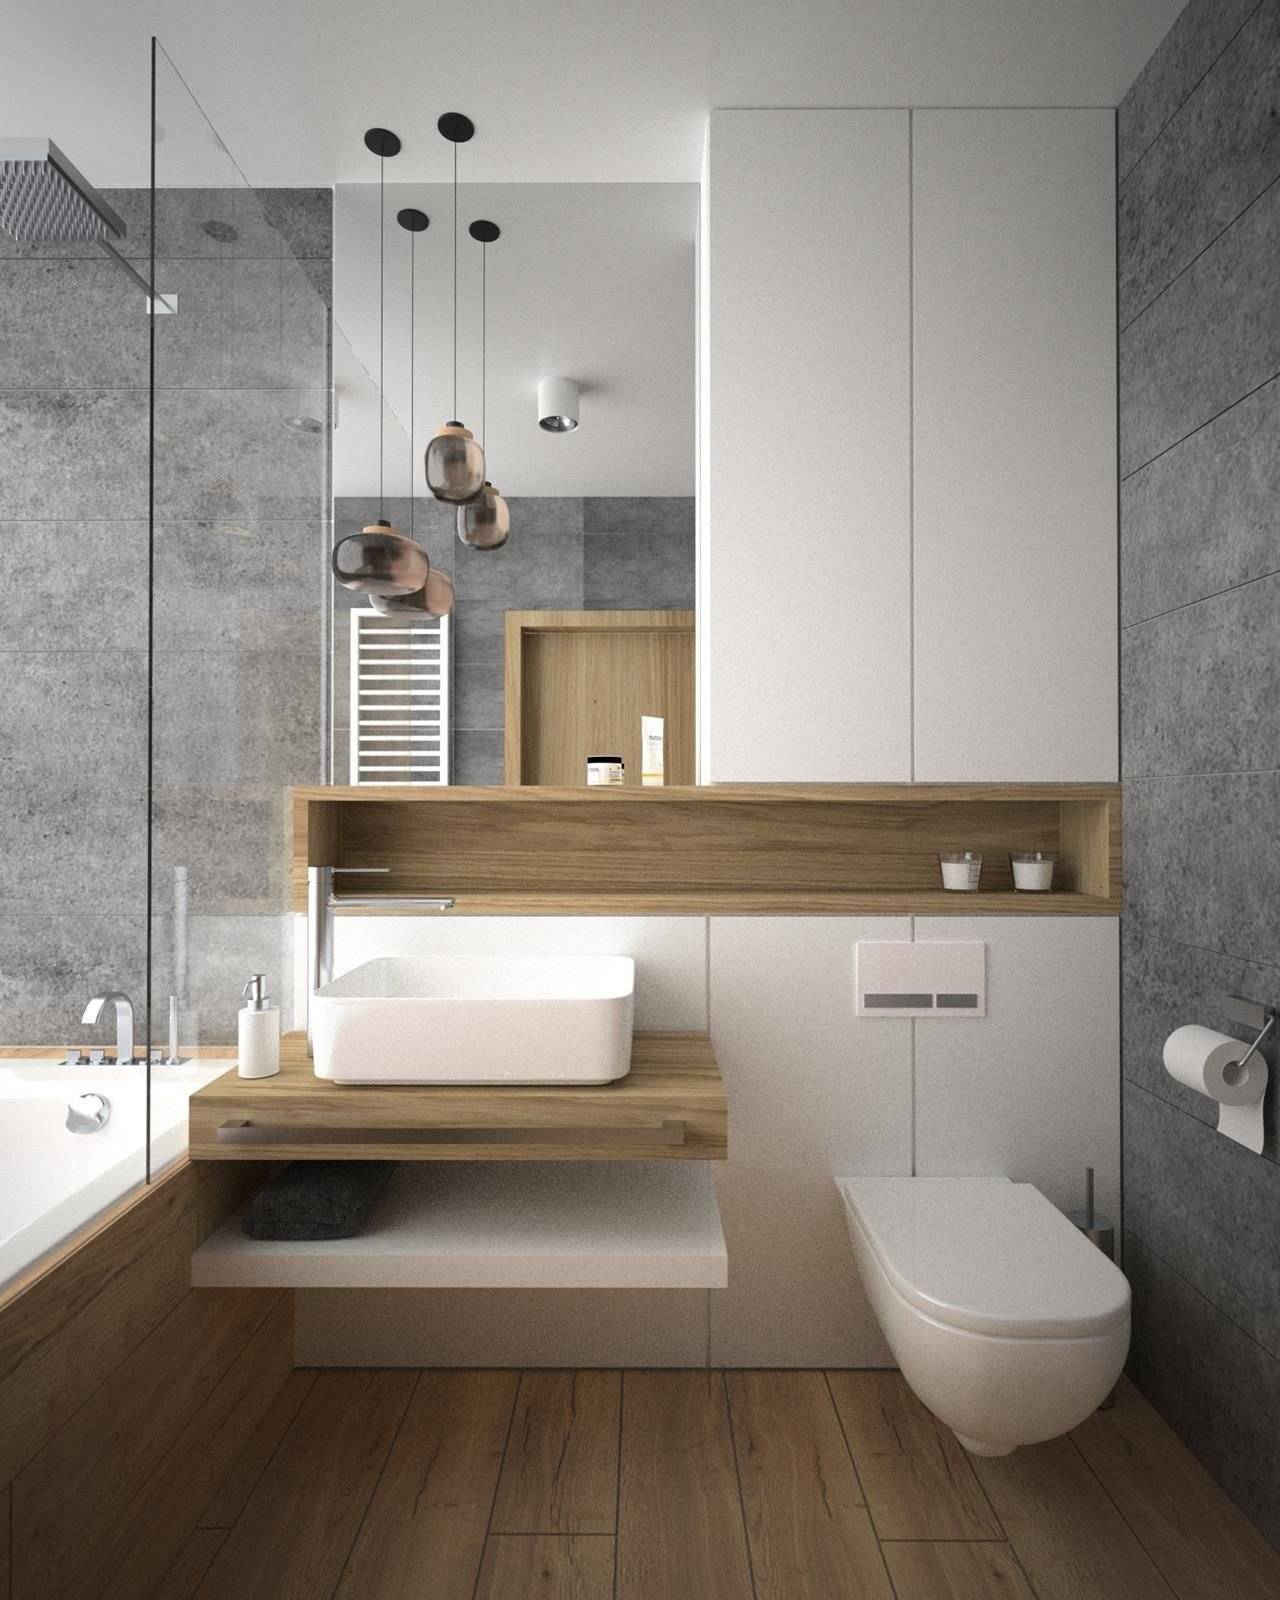 Ванные комнаты: дизайн, интерьер, красивые модные современные варианты отделки, маленькая ванная комната дизайн